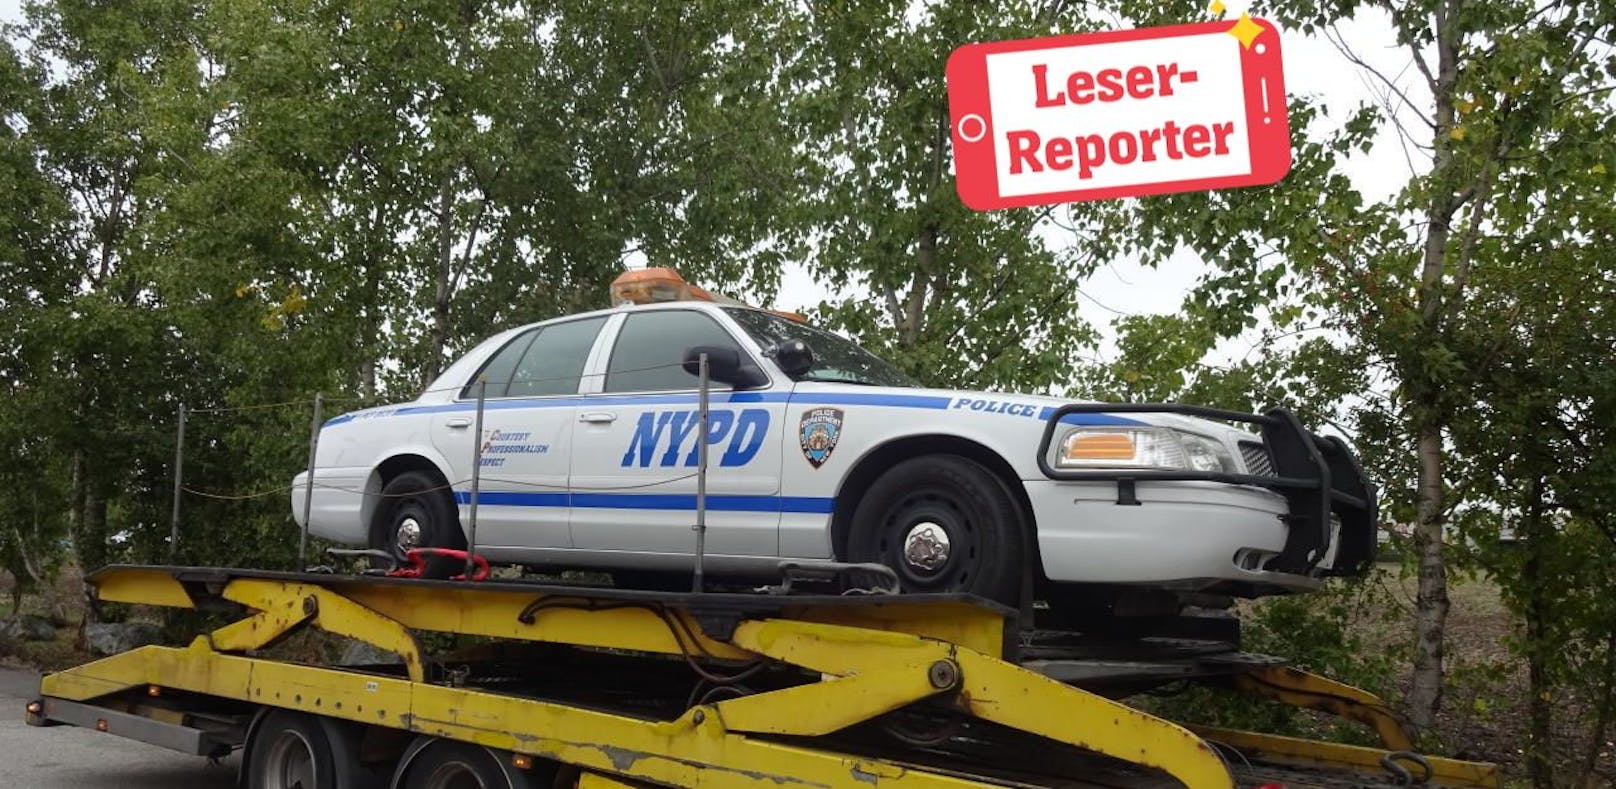 Der Streifenwagen des NYPD wurde in Perchtoldsdorf gesichtet.